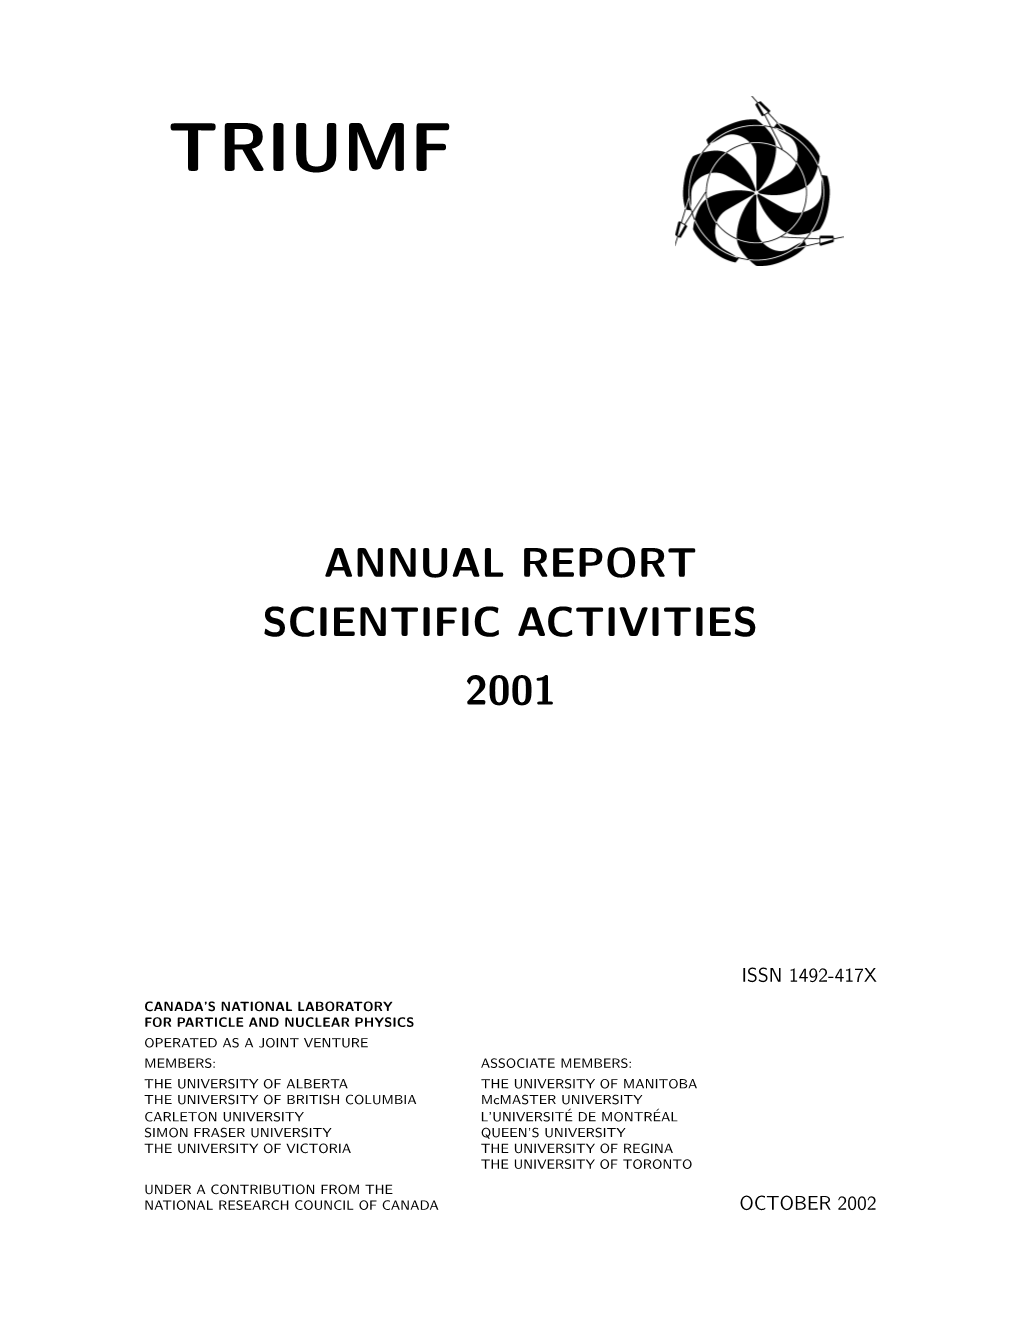 Annual Report Scientific Activities 2001